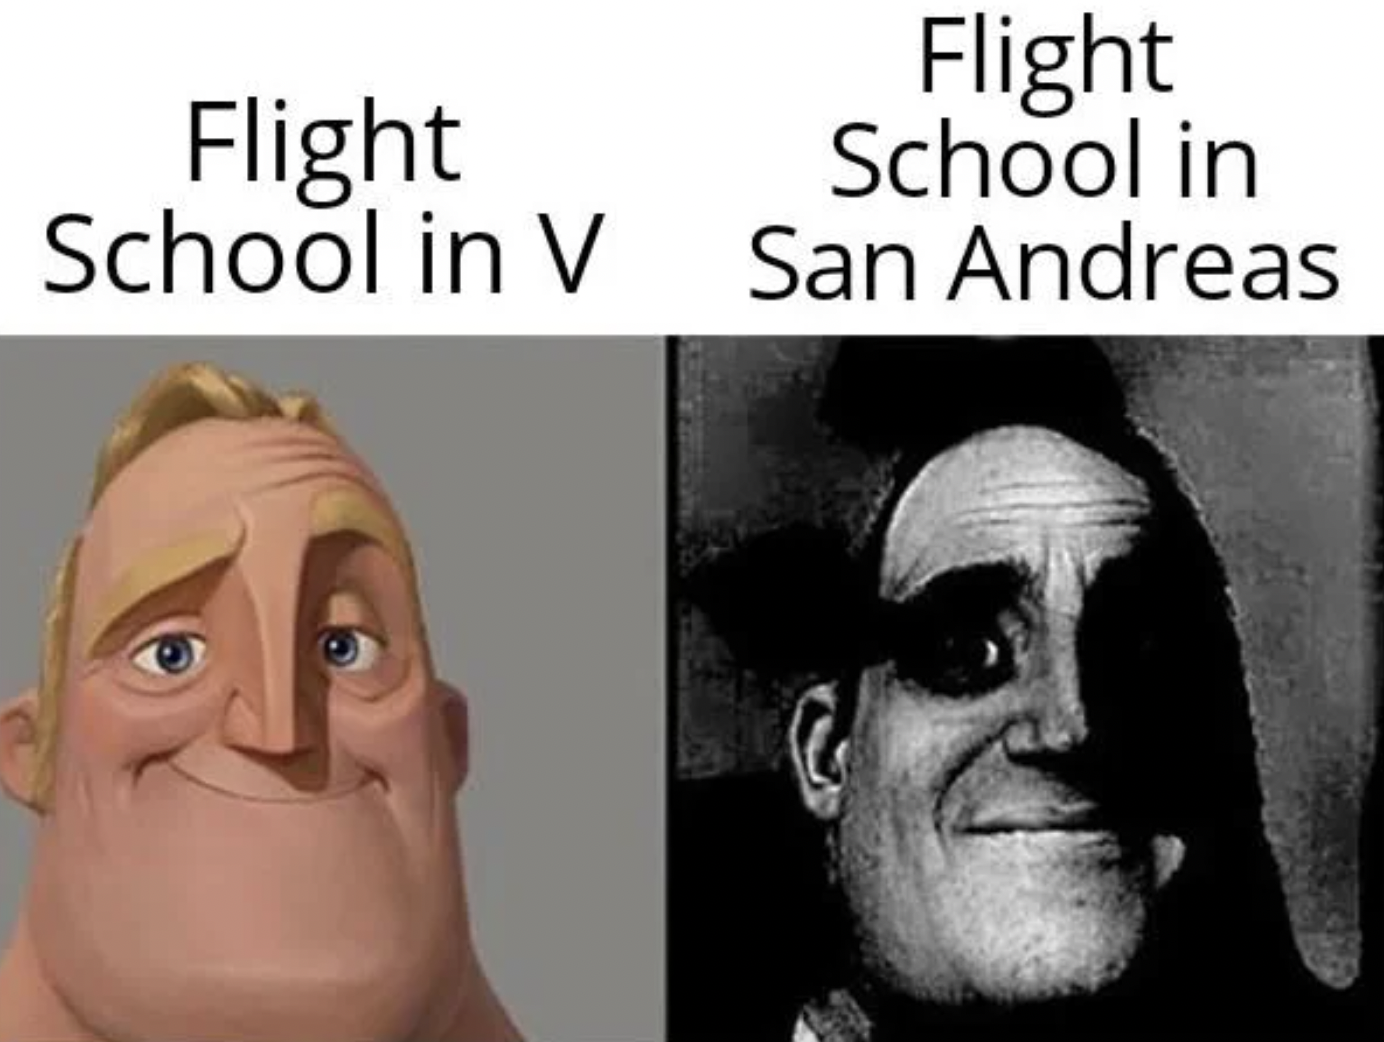 GTA V Memes - creeped out meme - Flight Flight School in School in V San Andreas